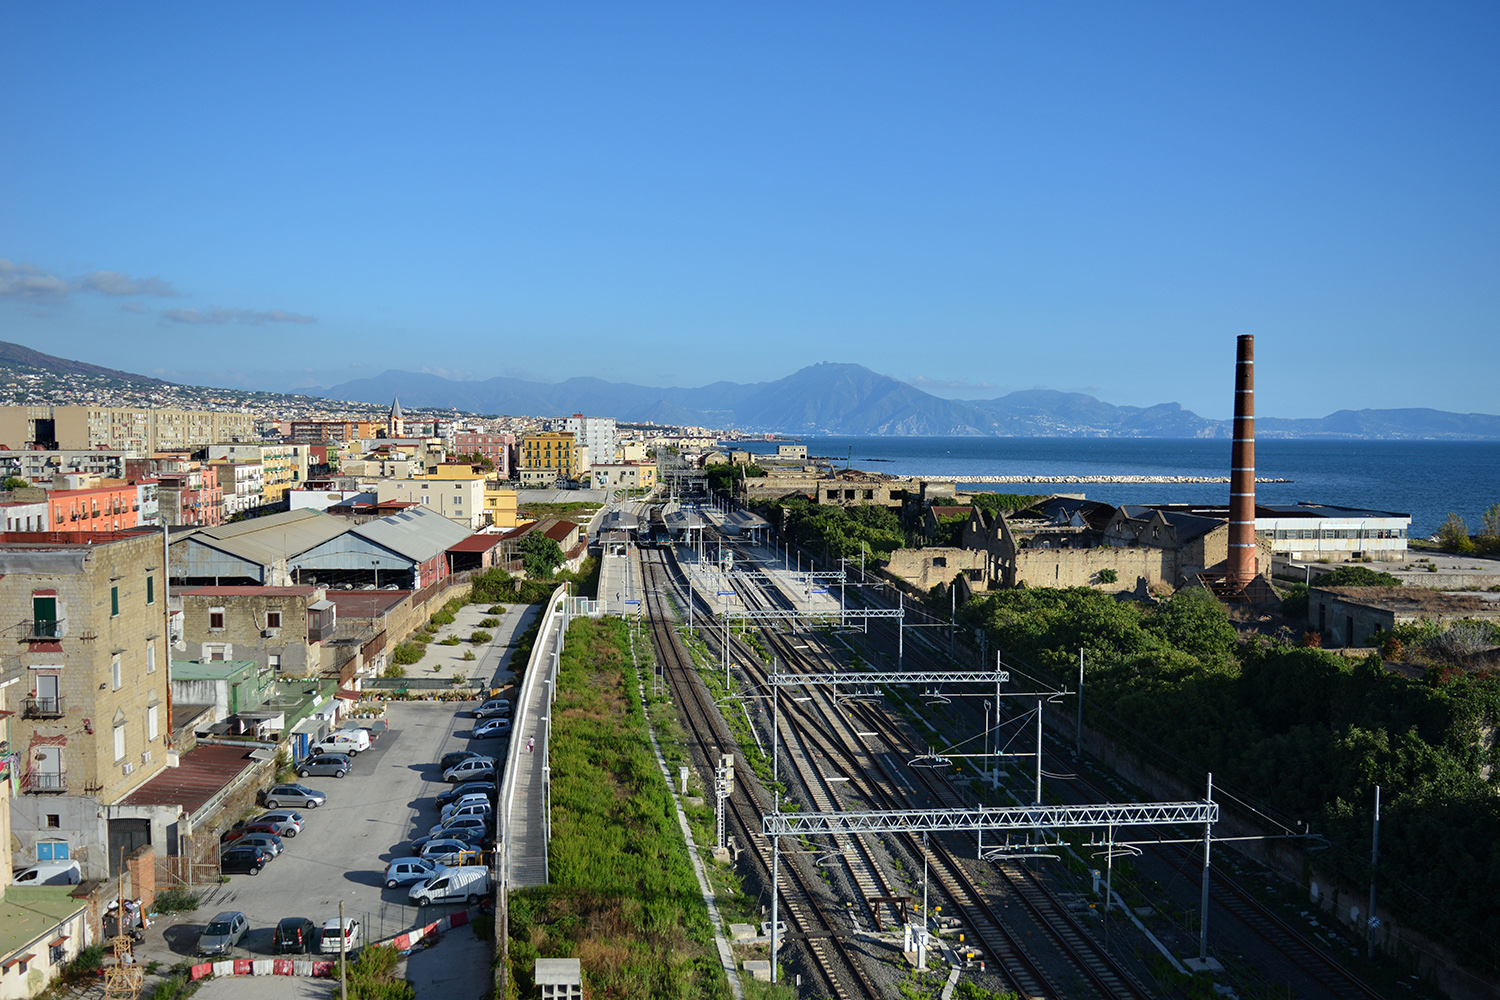  San Giovanni a Teduccio (Napoli), 2017. La ferrovia impedisce alla popolazione l’accesso al mare.© Alice Tinozzi 